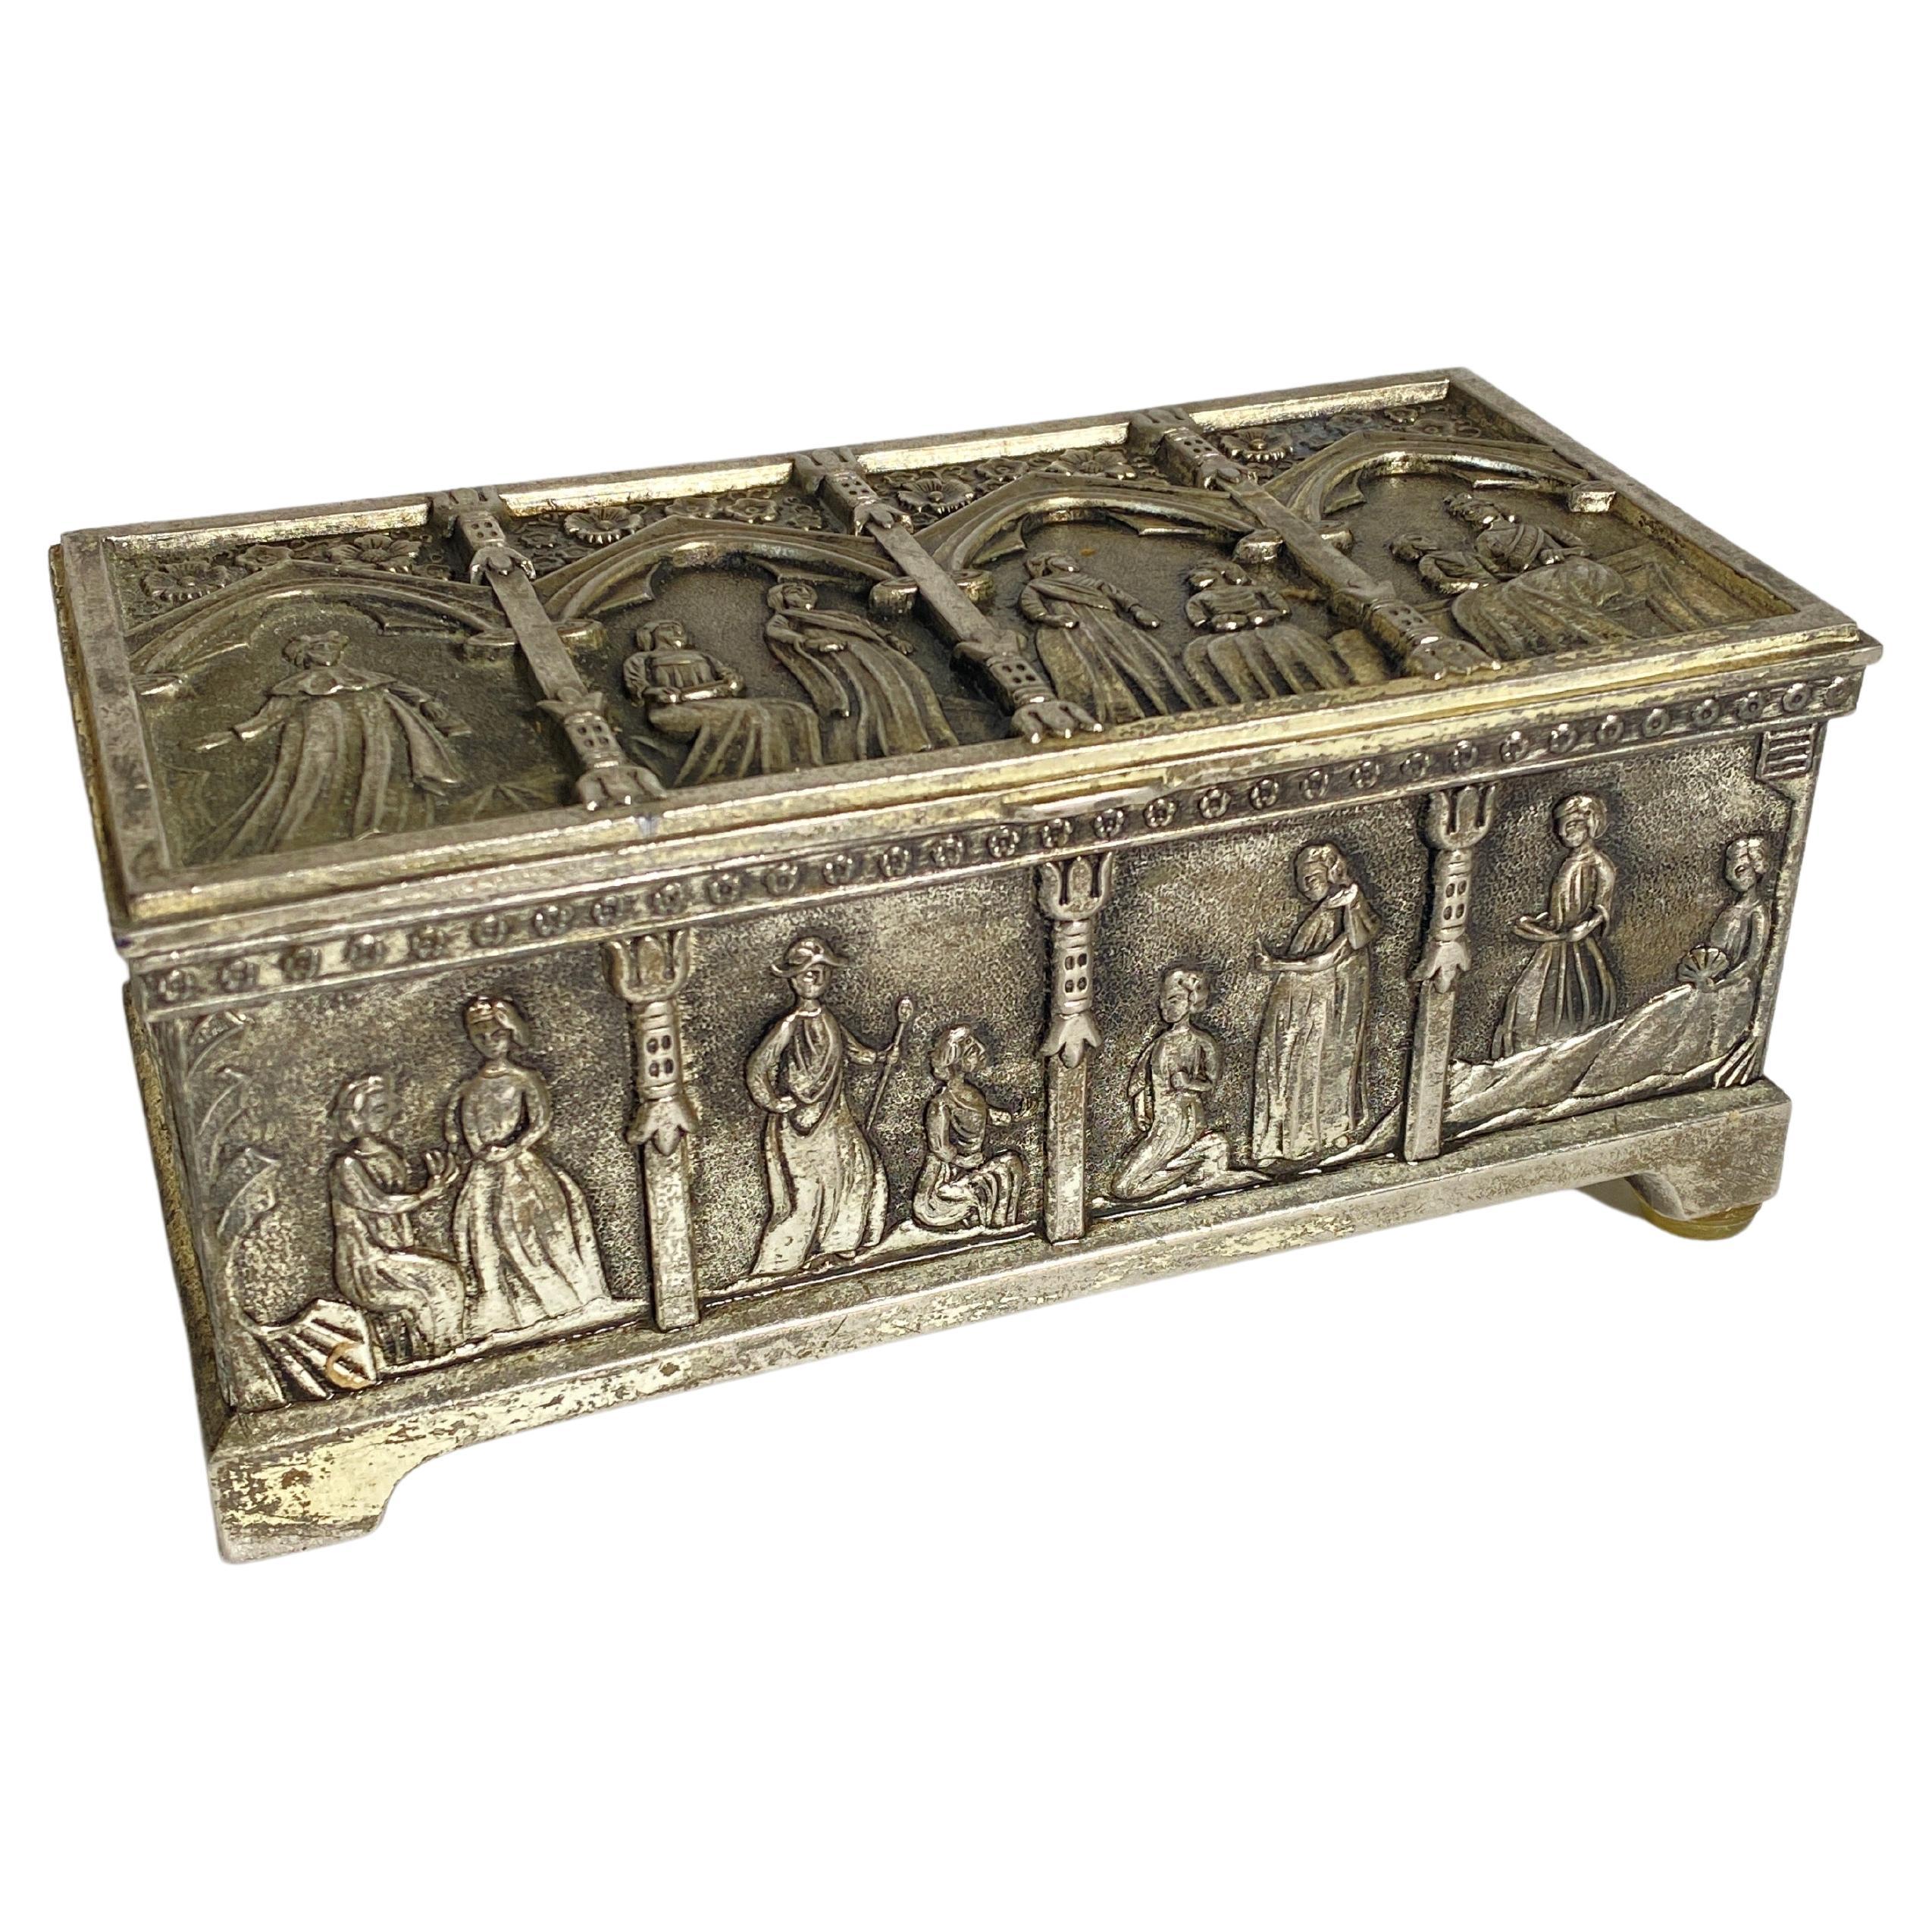 Dekorative Schachtel aus Metall, Silberfarbe, England, 19. Jahrhundert